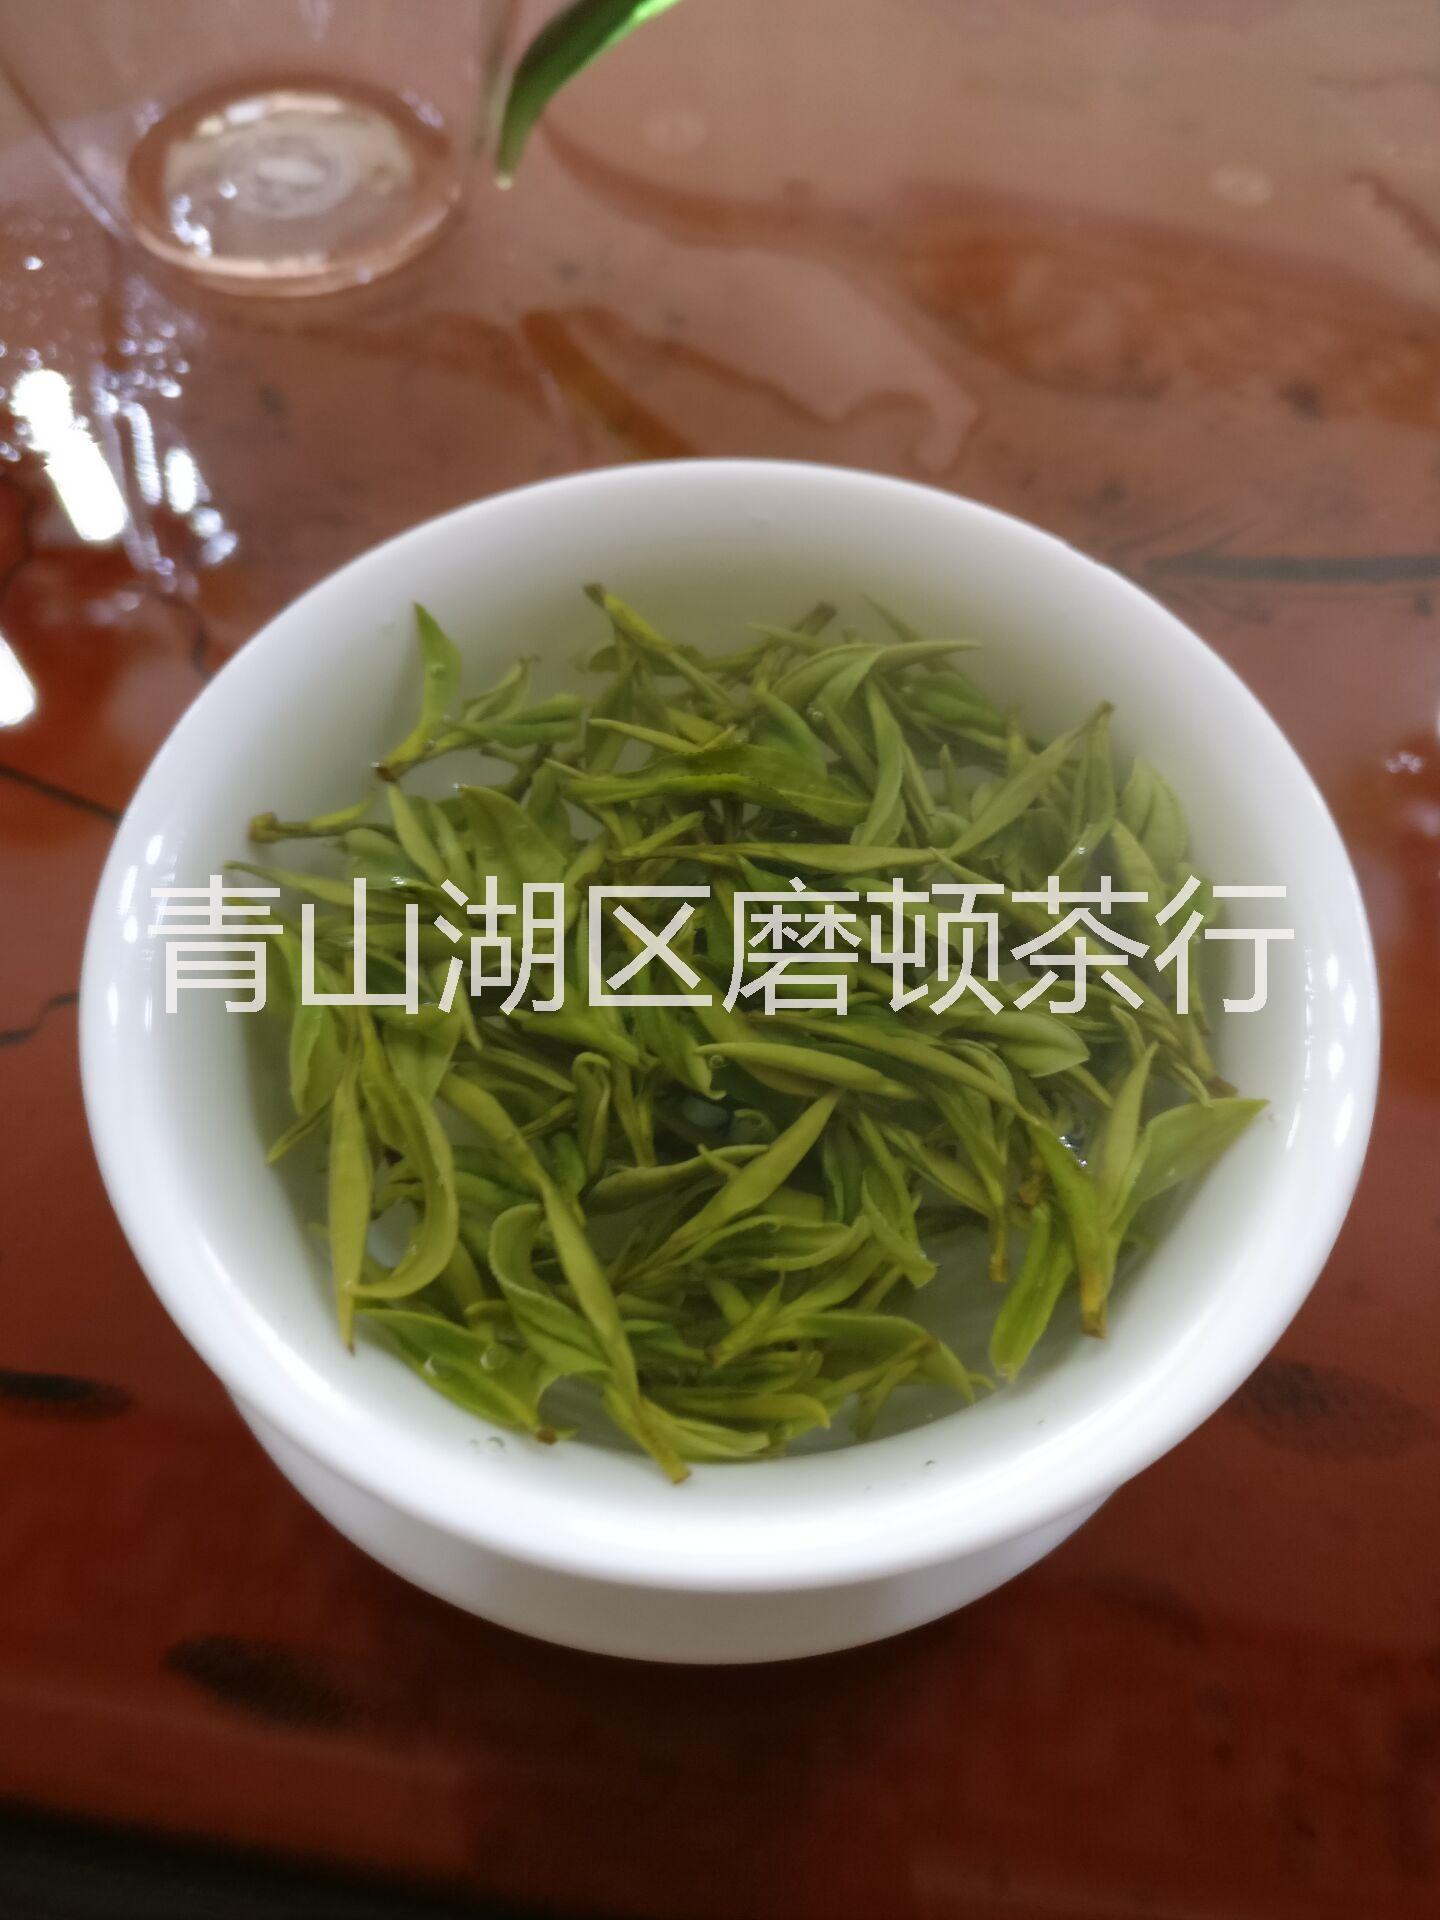 靖安白茶，沁元鑫明前特级茶，鲜爽甘甜，美容养颜饮品，高山茶，江西特产图片